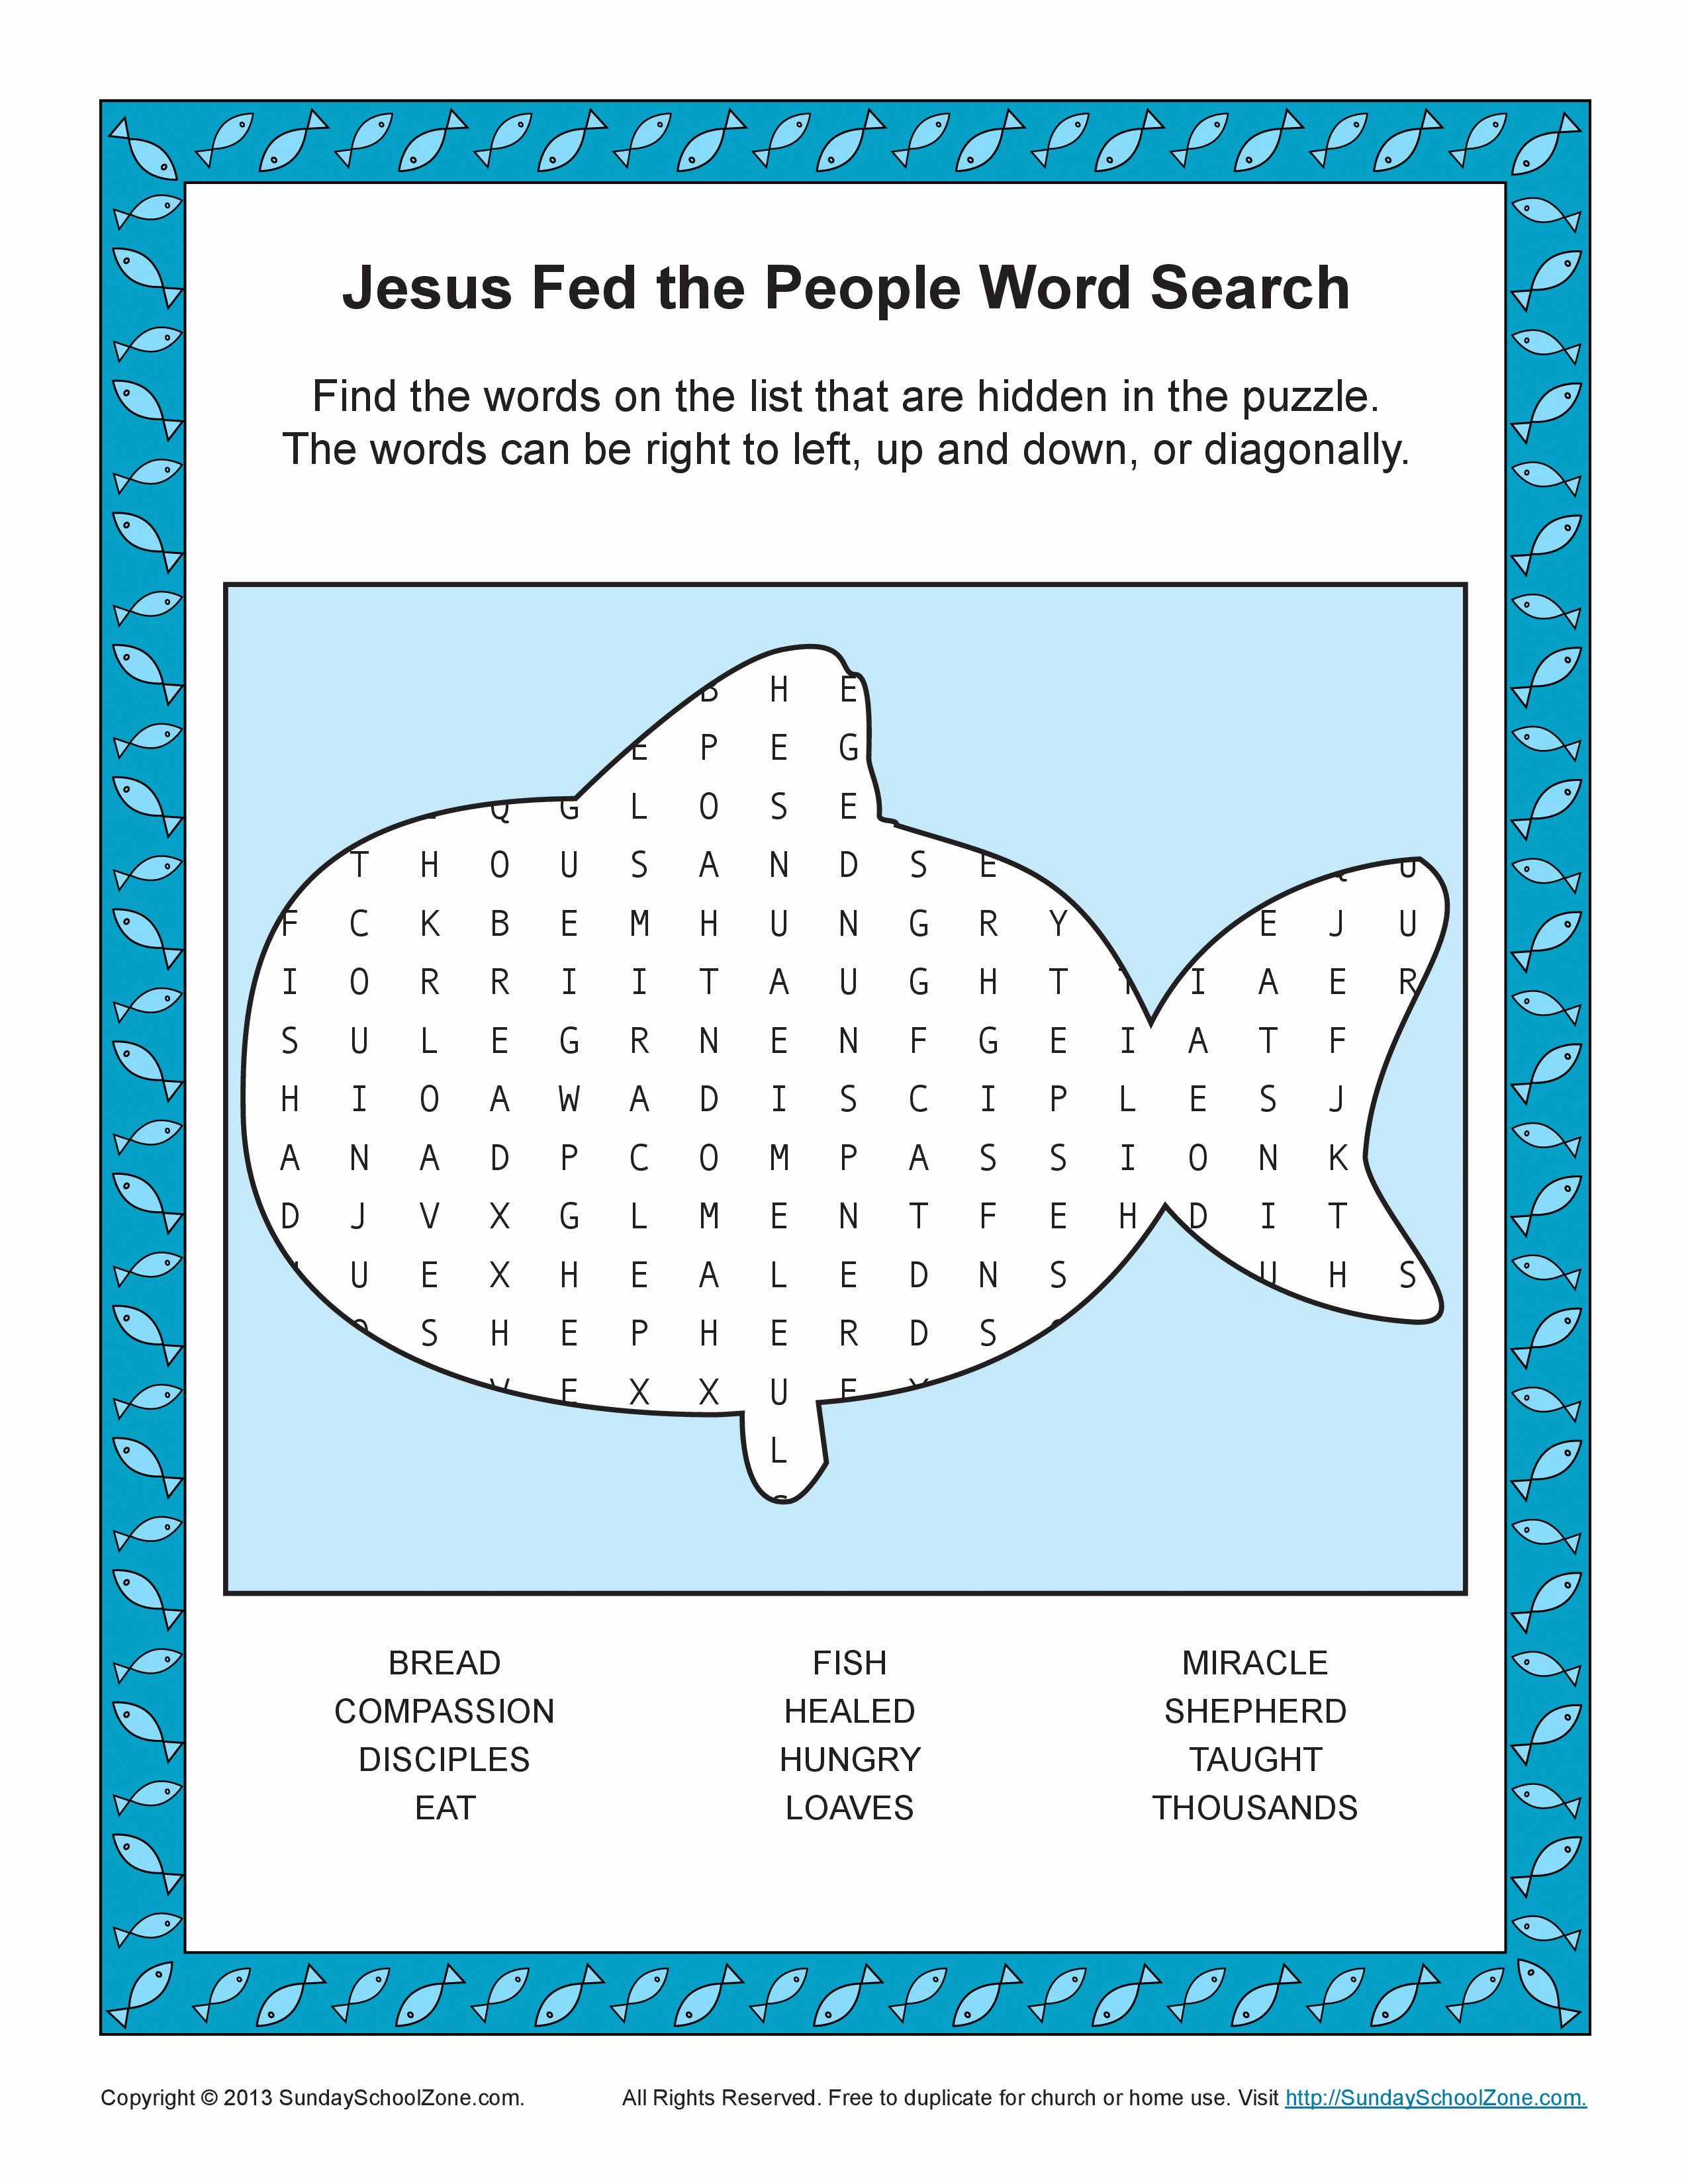 Jesus Feeds 5000 Word Search | Bible Activities for Children